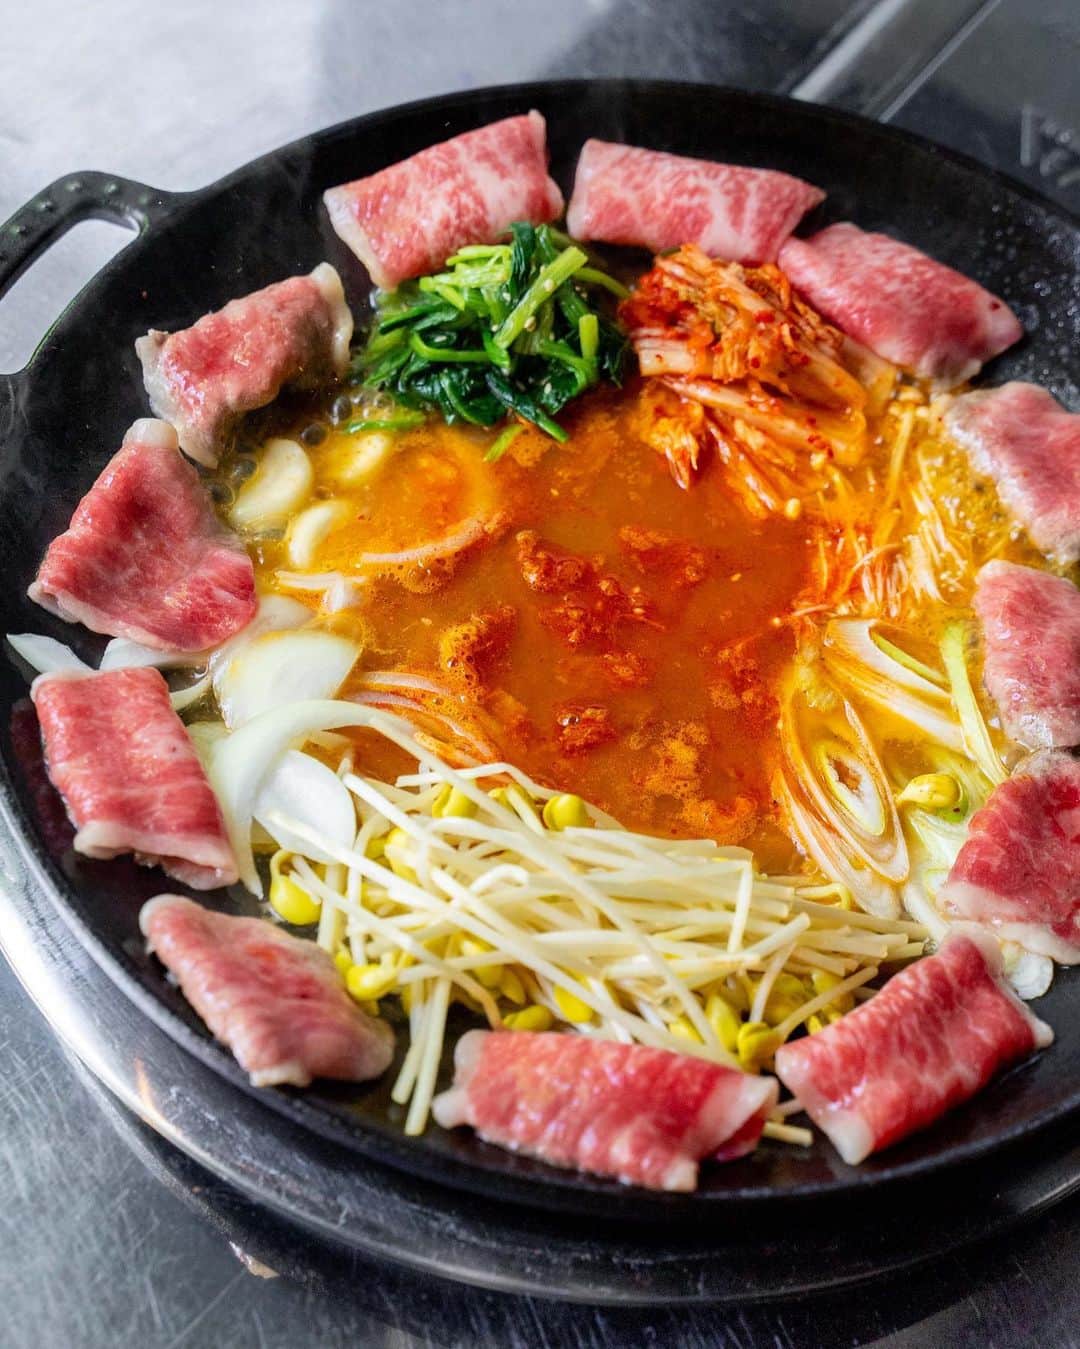 ナゴレコさんのインスタグラム写真 - (ナゴレコInstagram)「＼黒毛和牛を使った新感覚の韓国鍋が必見！本場の味がリーズナブルに楽しめるコリアンレストラン🇰🇷／  辛味の効いた料理が美味しい韓国料理🔥 実は今、国内ではたくさんの具材を辛〜いスープでグツグツと煮込んだ“韓国鍋”が流行っているのをご存知ですか👀✨？  今回は数ある韓国鍋のなかでも、まだ名古屋で浸透していない新感覚のお鍋を看板メニューに掲げている韓国料理店をご紹介🥘🥢  本場さながらのお味はもちろんのこと、わかりやすくリーズナブルな価格帯も魅力的なお店です✊  👉 @chard_ls  今回ご紹介するのは、地下鉄東山線 新栄町駅 1番出口から徒歩4分ほどのところにある「チャードルズ」さん🍺 お店の壁にはチャミスルがズラリと並んでいて、フォトジェニックな外観が目を引きます。  こちらの「チャードルズ」さん、実は2023年4月1日にリニューアルされたばかり✨ ディナーメニューは300円から注文できるというお手軽さ！  お味はもちろん、お手軽さもパワーアップしているようですね◎ 今回は名物メニューをはじめとしたトレンド韓国グルメを5つご紹介します🇰🇷💕  ●チュクミ  イイダコをメインに、キャベツや玉ねぎなどの野菜を自家製ヤンニョムをベースとしたスープで煮込んで作りあげる辛味の効いた韓国鍋🐙🔥 グツグツと煮立った真っ赤なお鍋は、まるでマグマのよう🌋 付け合わせのエゴマの葉や酢大根とともに食べると爽やかなおつまみに大変身！さっぱりと食べることができて、こちらもまた美味しいですよ🌿  ●チャドルバギ  お店の名物メニュー「チャドルバギ」は、薄切りした黒毛和牛のぶりすけ肉を使用した新感覚の韓国鍋🐮🔥 国内では東京・新大久保でジワジワと流行しているそうですが、名古屋では聞き馴染みのない方が多いのではないでしょうか？ 野菜がトロトロになるまで煮込まれたチゲスープは旨味が凝縮され、お肉から出た脂がほどよいコクをプラス💕 韓国好きの方はもちろん、新しい鍋メニューに挑戦したい方にもオススメです👌  ●ヤンニョムチキン ●かけるチーズ   チキンはしっとりジューシーで、お肉の甘みとこってり濃厚な自家製ヤンニョムソースの辛みがベストマッチング◎ 今回は大人気のオプションメニュー「かけるチーズ」をトッピングしました🧀 とろ〜りアツアツなチーズと合わせると、辛さがマイルドになりコクが倍増！ チーズが伸びる様子もフォトジェニックで、みんなで楽しみながら味わえること間違いなし💯  ●チーズキンパ  韓国風海苔巻き「キンパ」にチーズが合わさった背徳感たっぷりのアレンジメニュー🇰🇷🍙 チーズの濃厚なコクとお米に染み込んだマイルドな辛さが絶妙💕 気づけばついつい手が伸びてしまう、クセになる味わいです🧀  ●オレオチョコクロッフル  新定番トレンドスイーツ「クロッフル」にチョコソースや砕いたオレオをトッピングしたデザート🥐🧇 焼きたてのクロッフルとひんやりとしたアイスクリームをのせて食べると…思わずうっとりするほどスイートな味わい🍫💕 クロッフルのもっちり食感やオレオのザクザク食感など、一皿でいろんな食感が楽しめるのもポイント◎  ／ アレもコレも楽しみたい人に打ってつけ✨韓国のトレンドグルメを楽しむならチャードルズで決まり🍺 ＼  韓国鍋をはじめ、ヤンニョムチキンやクロッフルなど種類豊富なサイドメニューまでリーズナブルに楽しめるコリアンレストラン「チャードルズ」さんを紹介しました💕  なかでも新感覚の「チャドルバギ」をいただけるお店はまだ数少ないので、今のうちに食すが吉🚩  みなさんもぜひ、「チャードルズ」さんで韓国のトレンドグルメを楽しんでみてください✨  #ナゴレコ で、あなたの投稿をリポスト！ webサイト「ナゴレコ」もチェックしてね👀  ‥‥‥‥‥‥‥‥‥‥‥‥‥‥‥‥ PR #チャードルズ #チャドルバギ」4月27日 17時00分 - nagoya_food